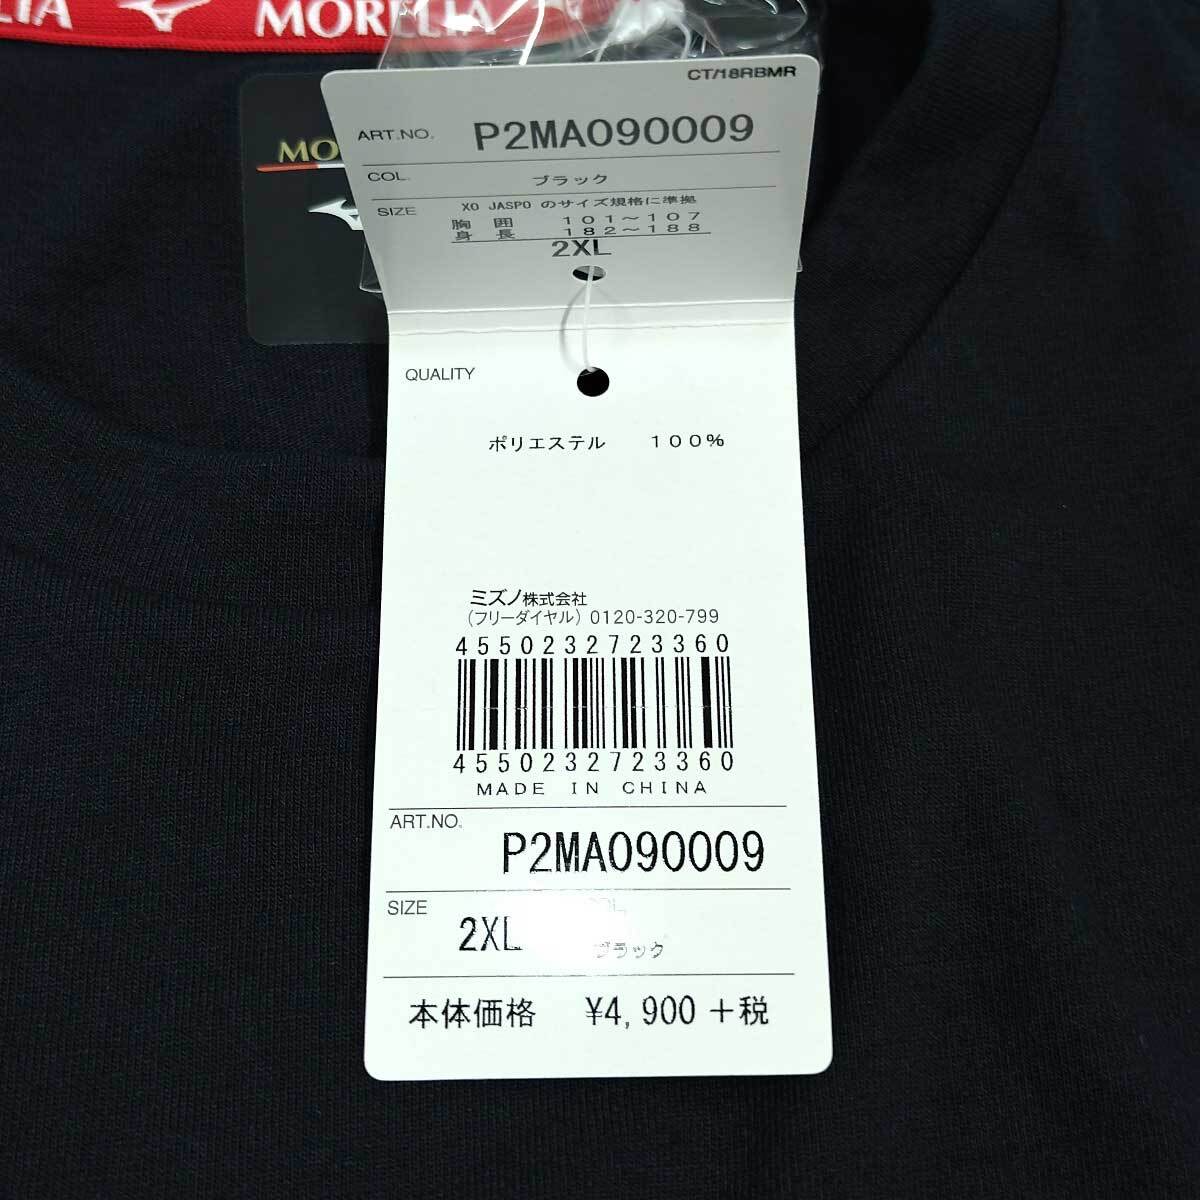 【中古・未使用品】ミズノ MORELIA モレリア 35th Tシャツ 2XL ブラック P2MA090009 メンズ MIZUNO_画像4